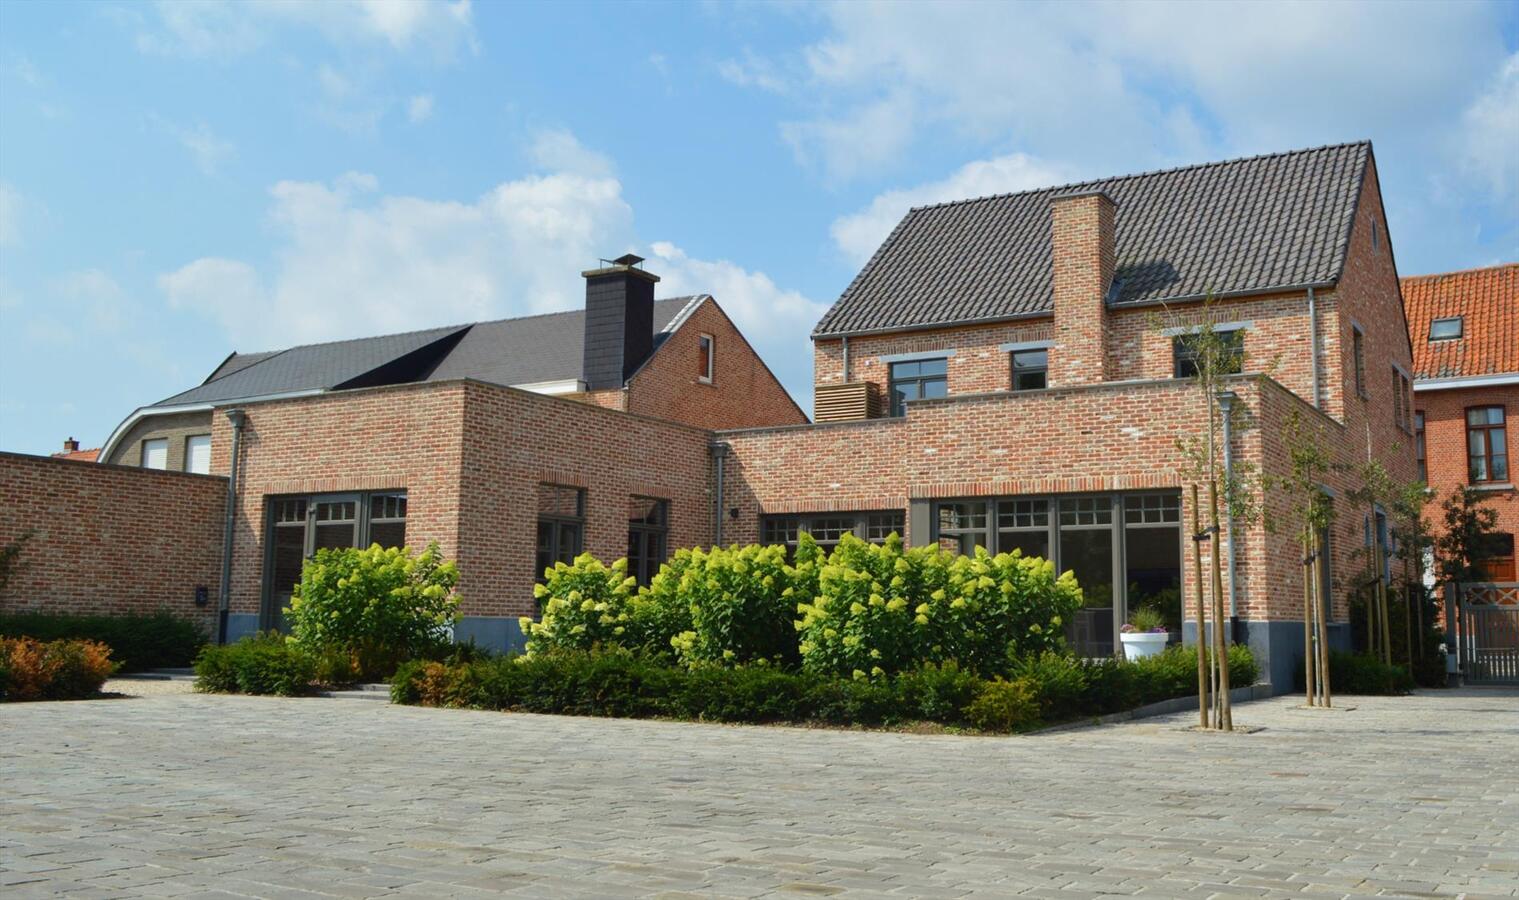 Property sold in Meerdonk